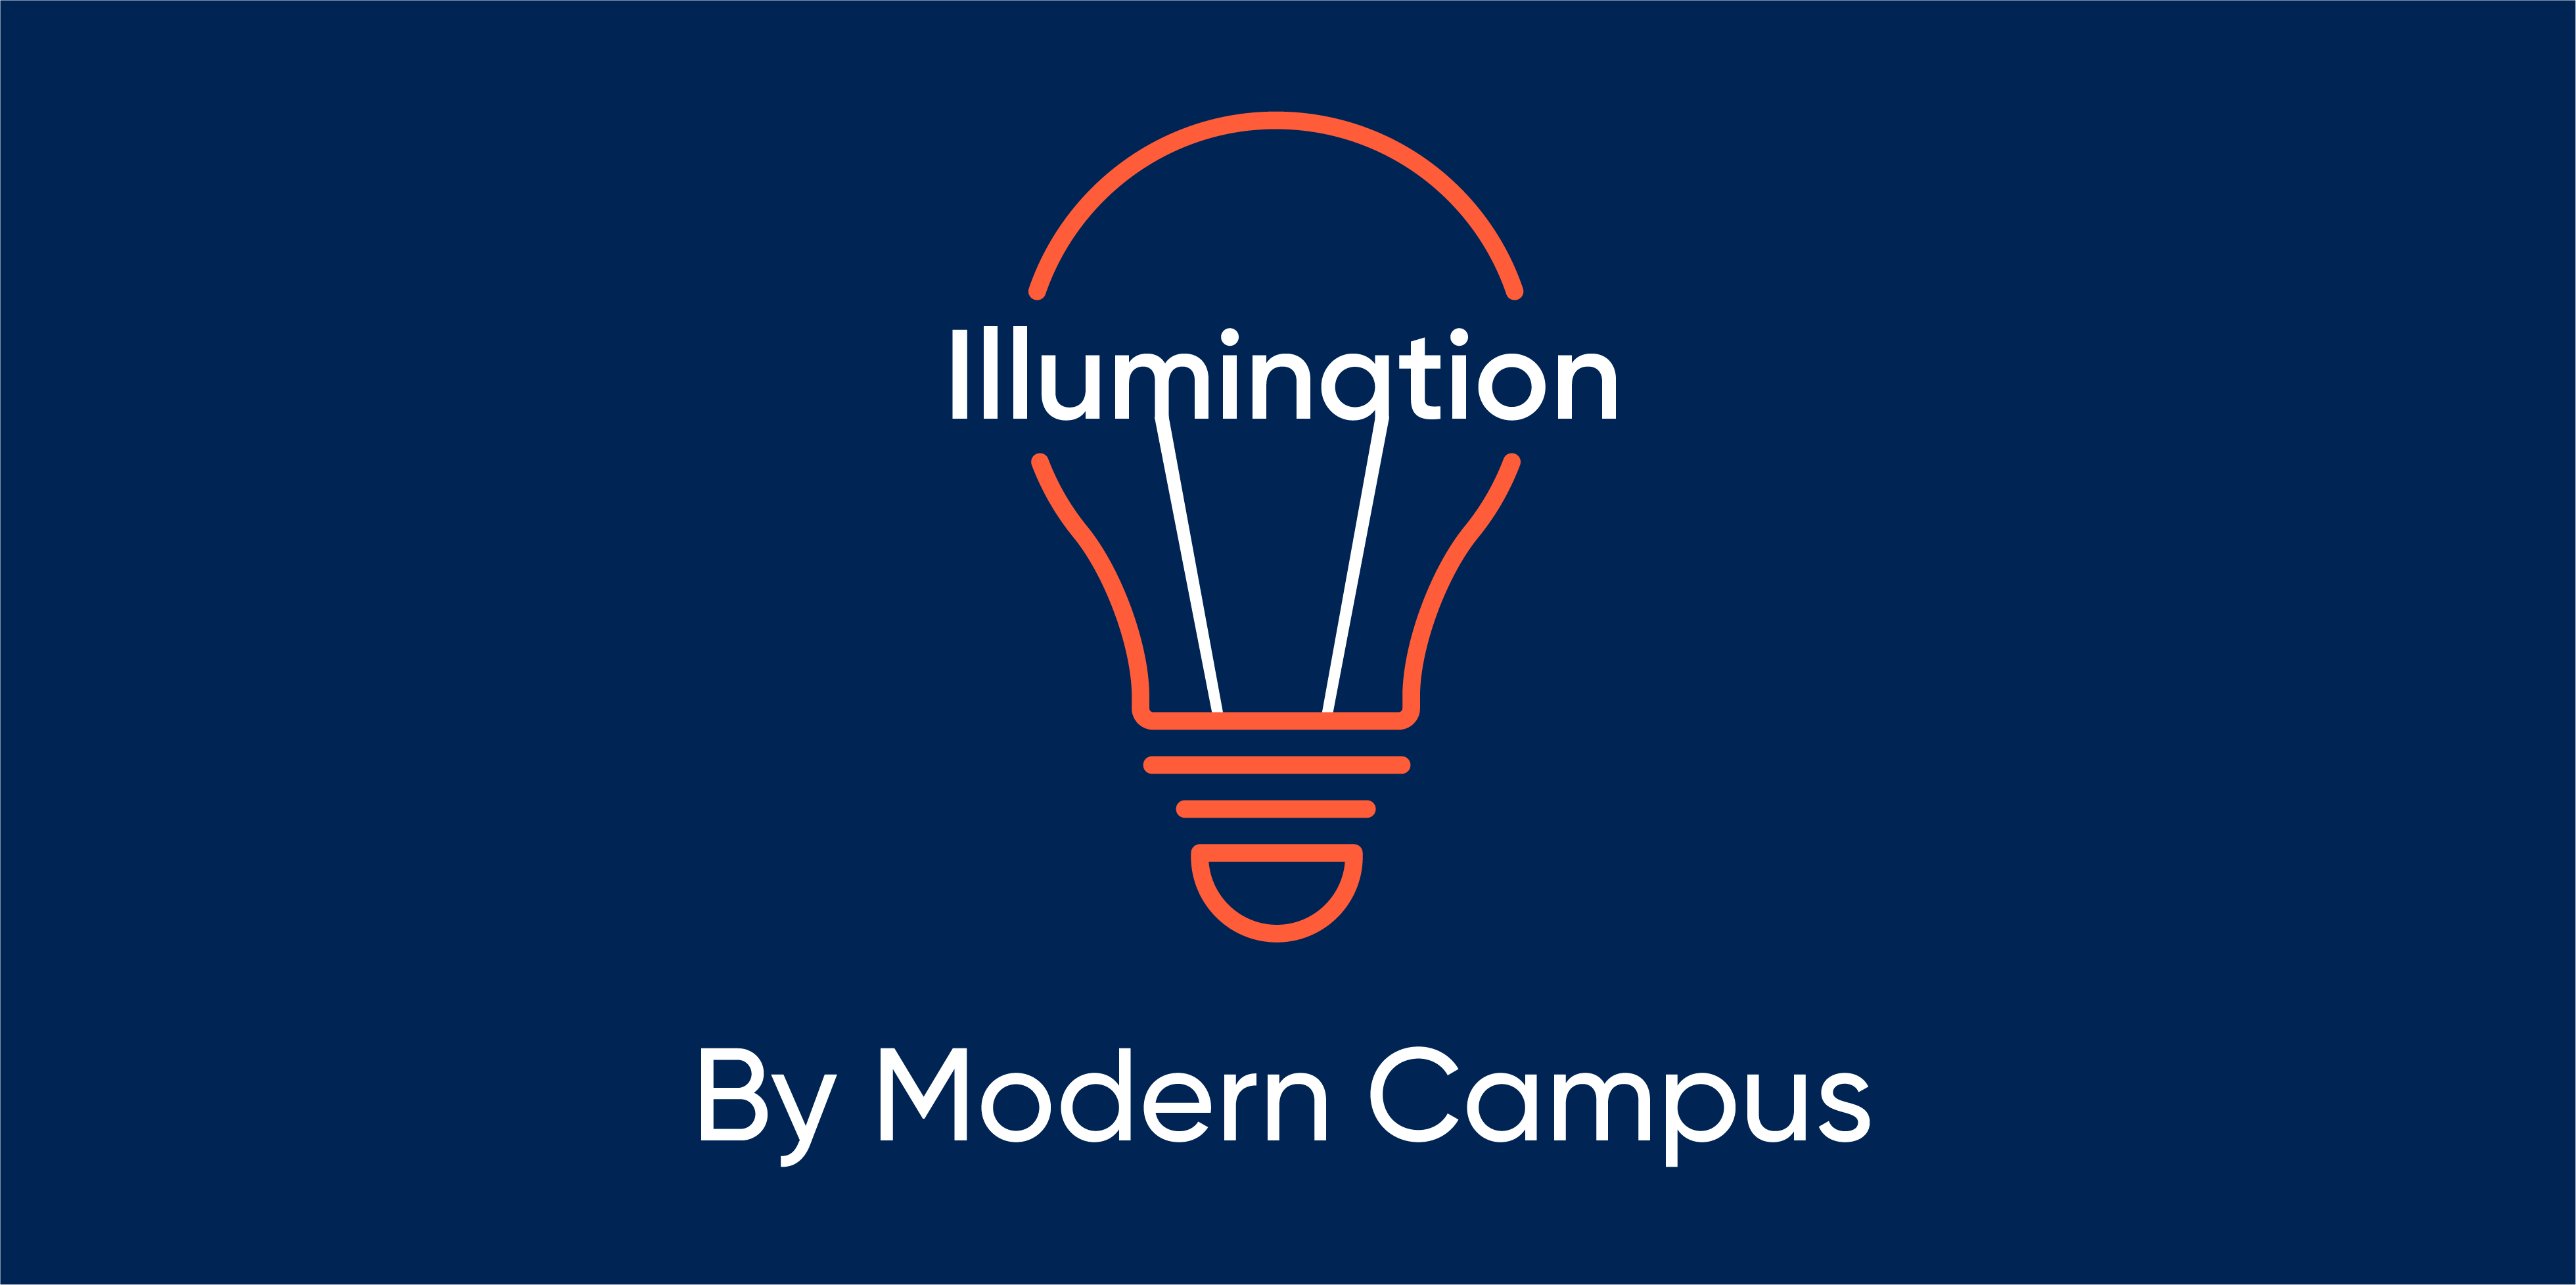 Episode 22: Illumination by Modern Campus